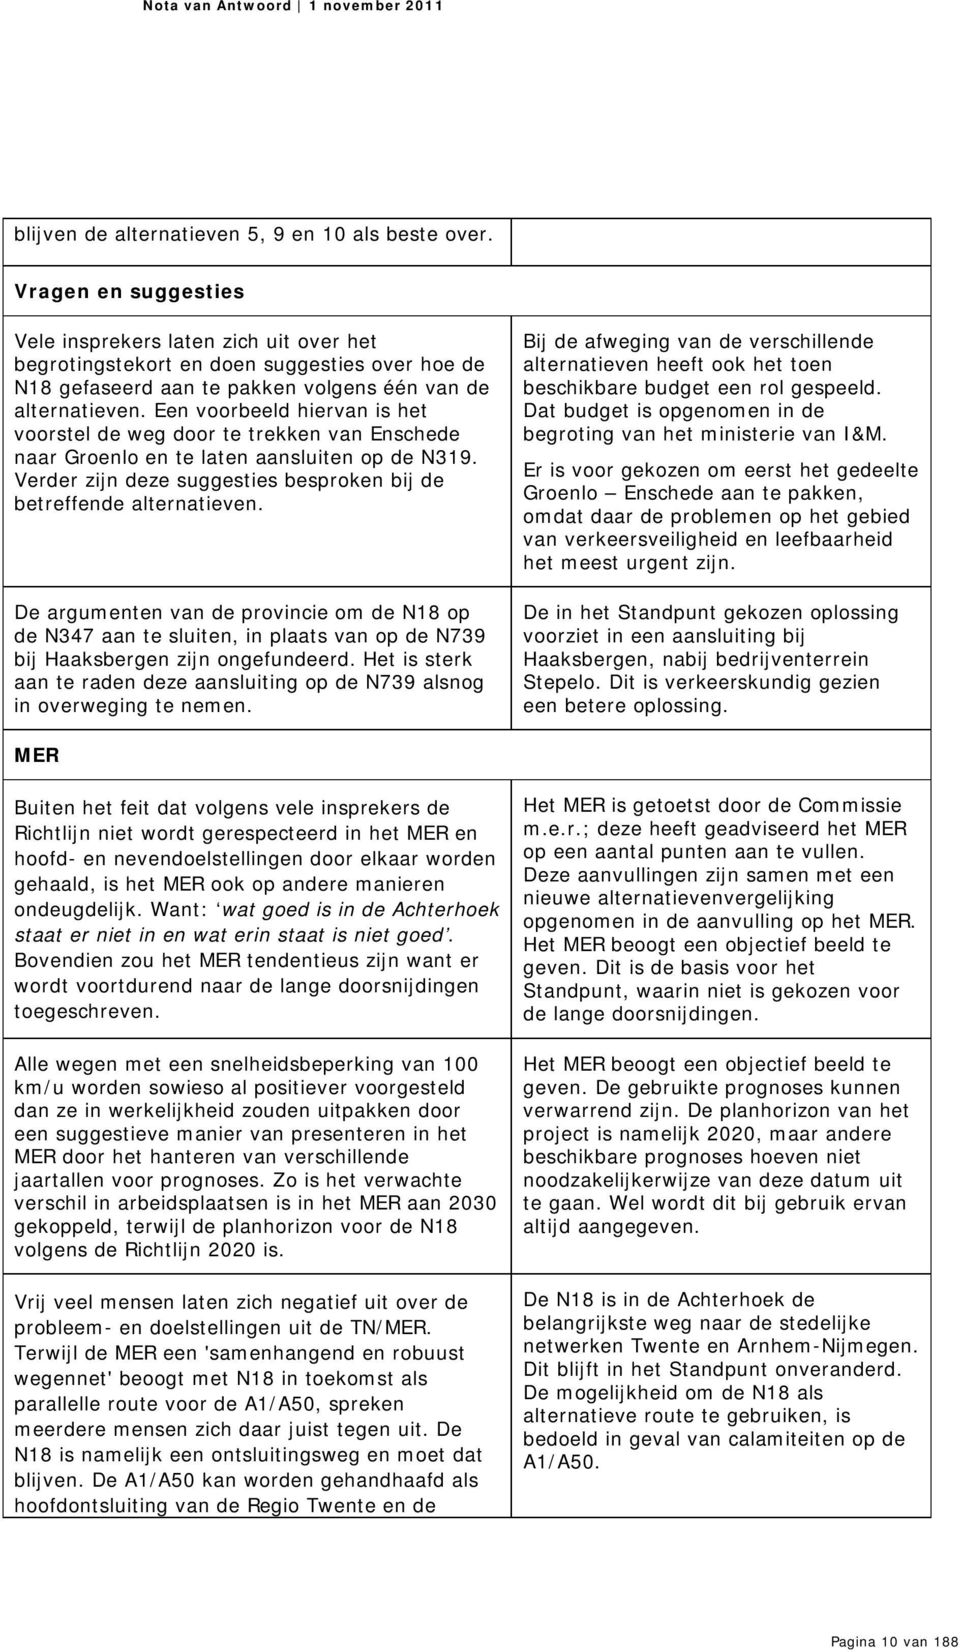 Een voorbeeld hiervan is het voorstel de weg door te trekken van Enschede naar Groenlo en te laten aansluiten op de N319. Verder zijn deze suggesties besproken bij de betreffende alternatieven.